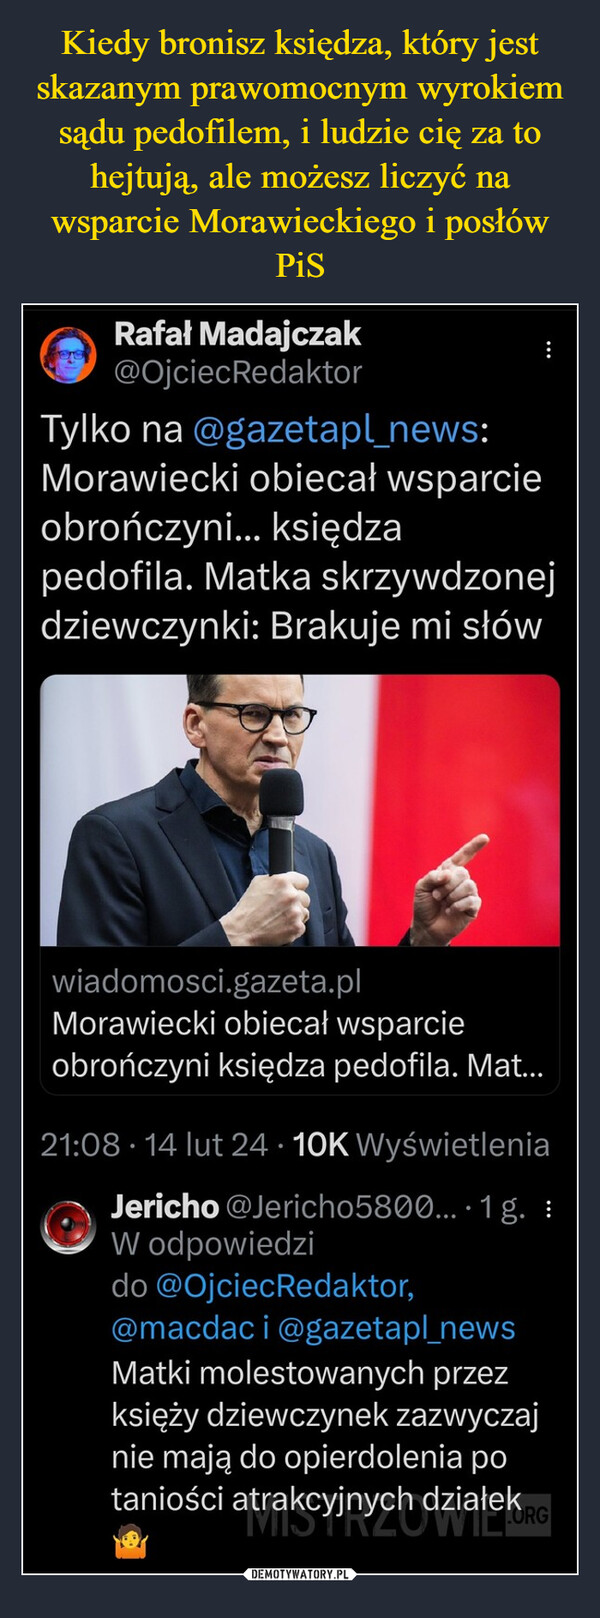  –  Rafał Madajczak@OjciecRedaktor:Tylko na @gazetapl_news:Morawiecki obiecał wsparcieobrończyni... księdzapedofila. Matka skrzywdzonejdziewczynki: Brakuje mi słówwiadomosci.gazeta.plMorawiecki obiecał wsparcieobrończyni księdza pedofila. Mat...21:08 14 lut 24 10K WyświetleniaJericho @Jericho5800... 1 g. :W odpowiedzido @OjciecRedaktor,@macdaci @gazetapl_newsMatki molestowanych przezksięży dziewczynek zazwyczajnie mają do opierdolenia potaniości atrakcyjnych działek RG19